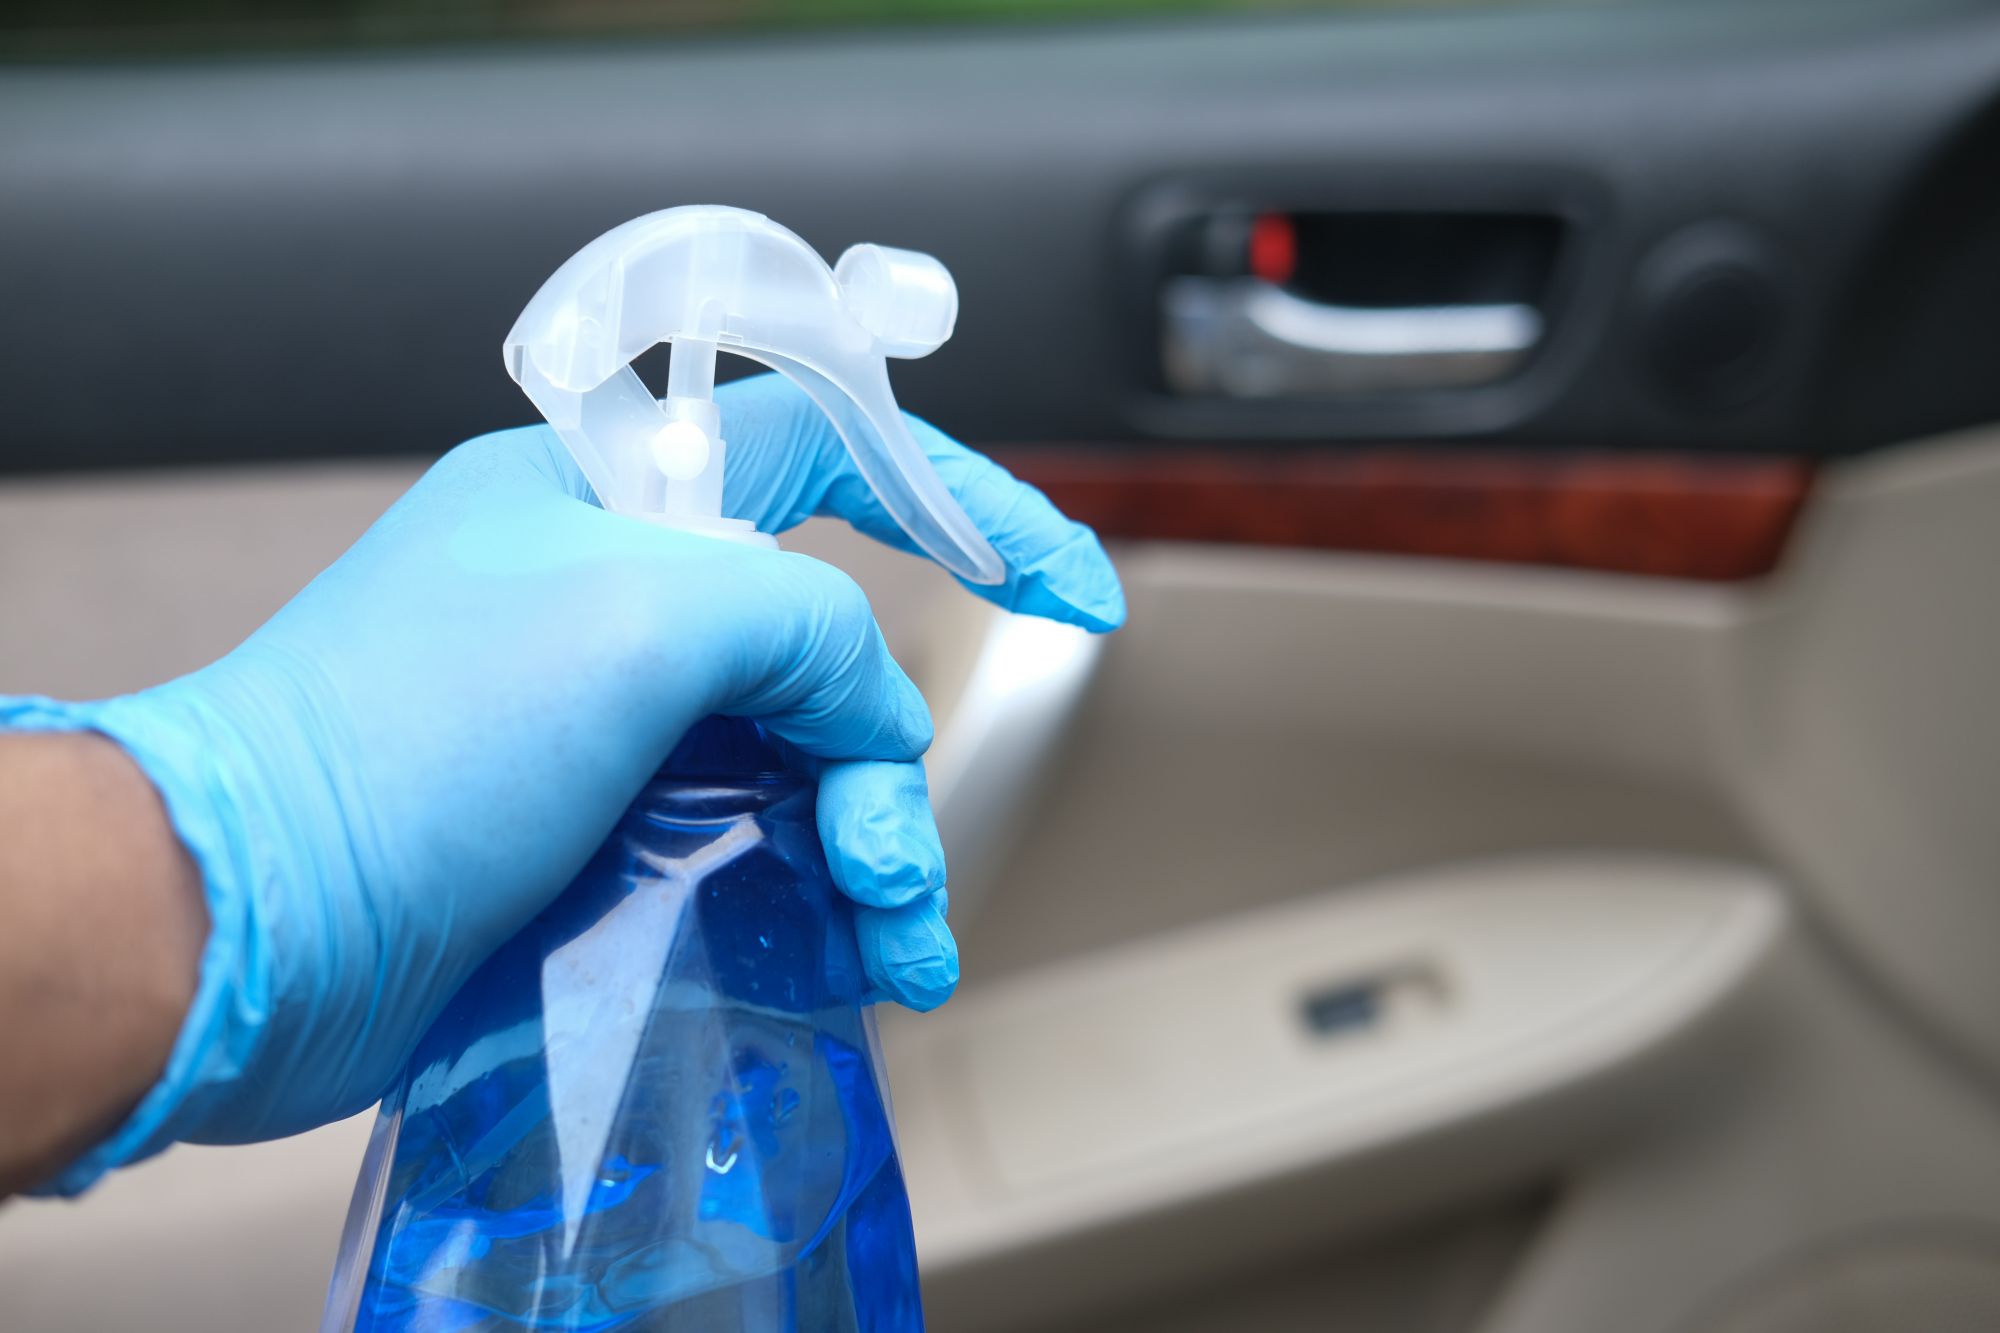 Gant de nettoyage en microfibres pour voitures et surfaces fragiles